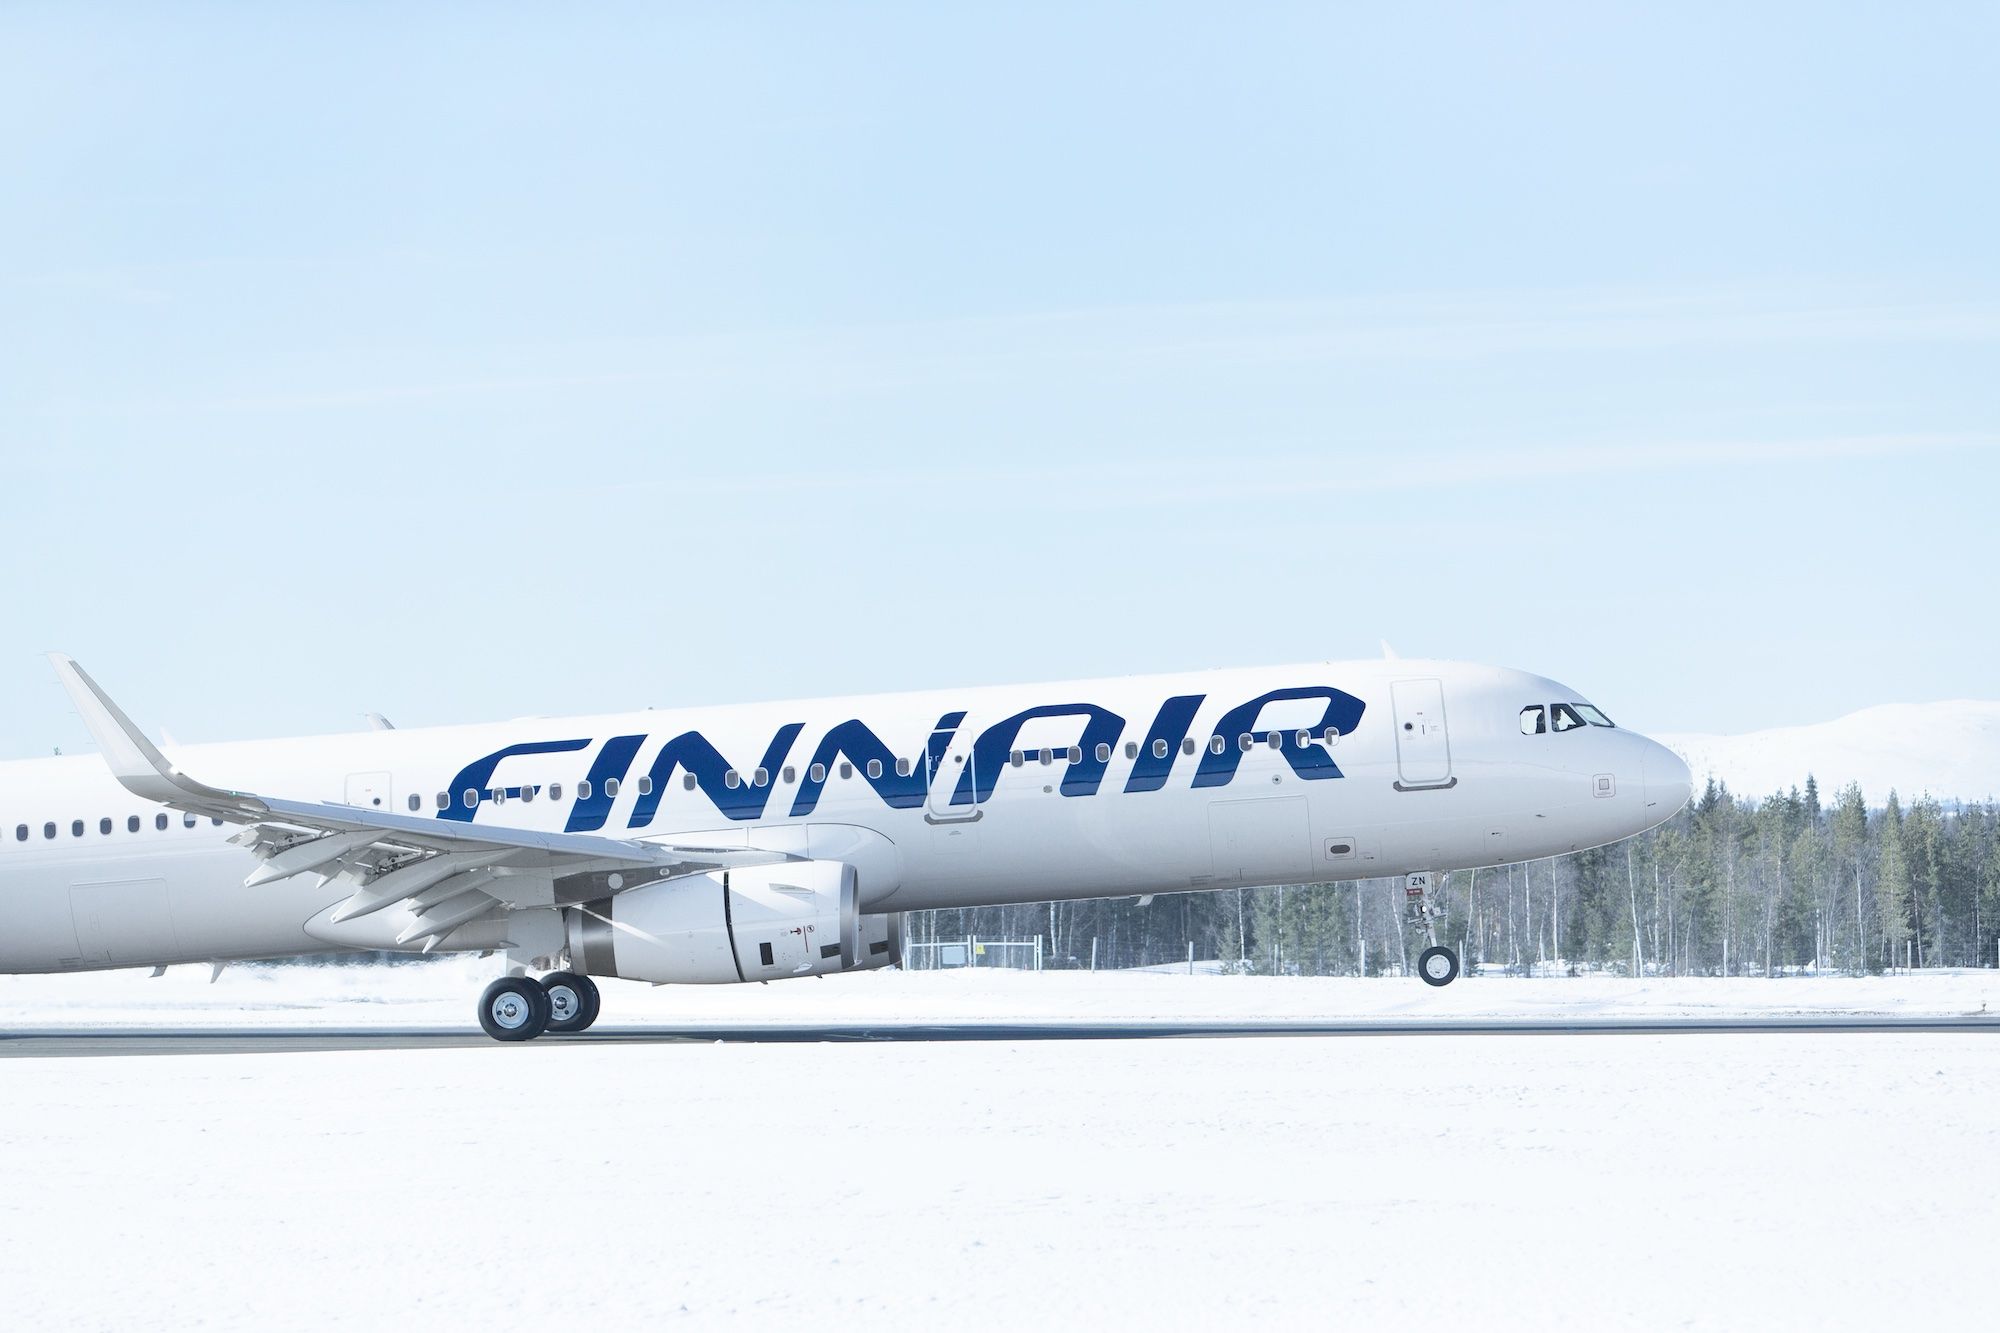 A finnair A320 taking off